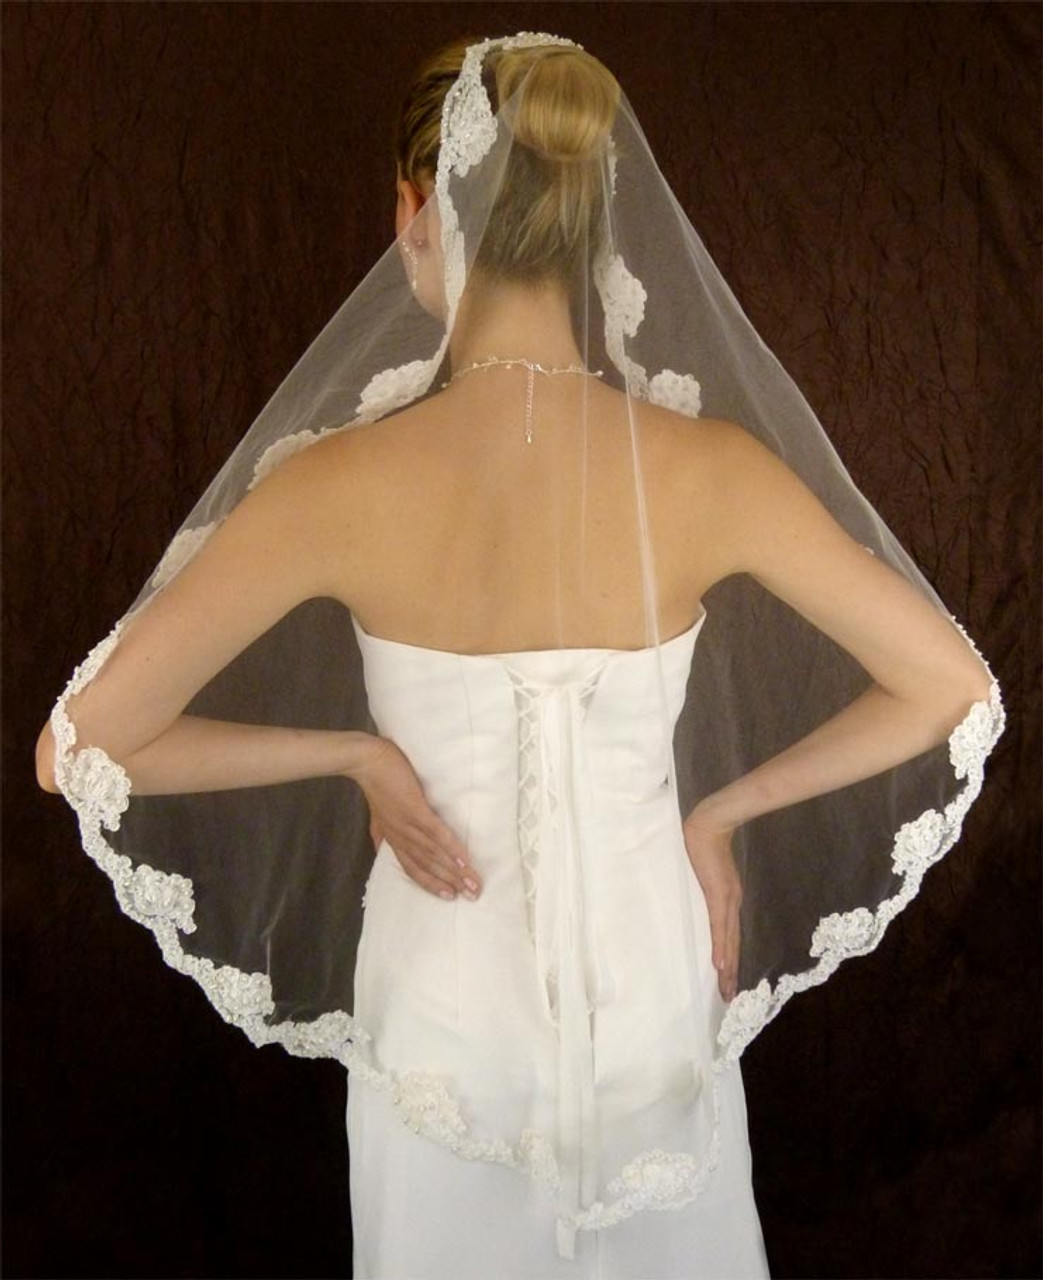 Bel Aire Bridal Veils V7357 1-tier fingertip veil with Baroque designs